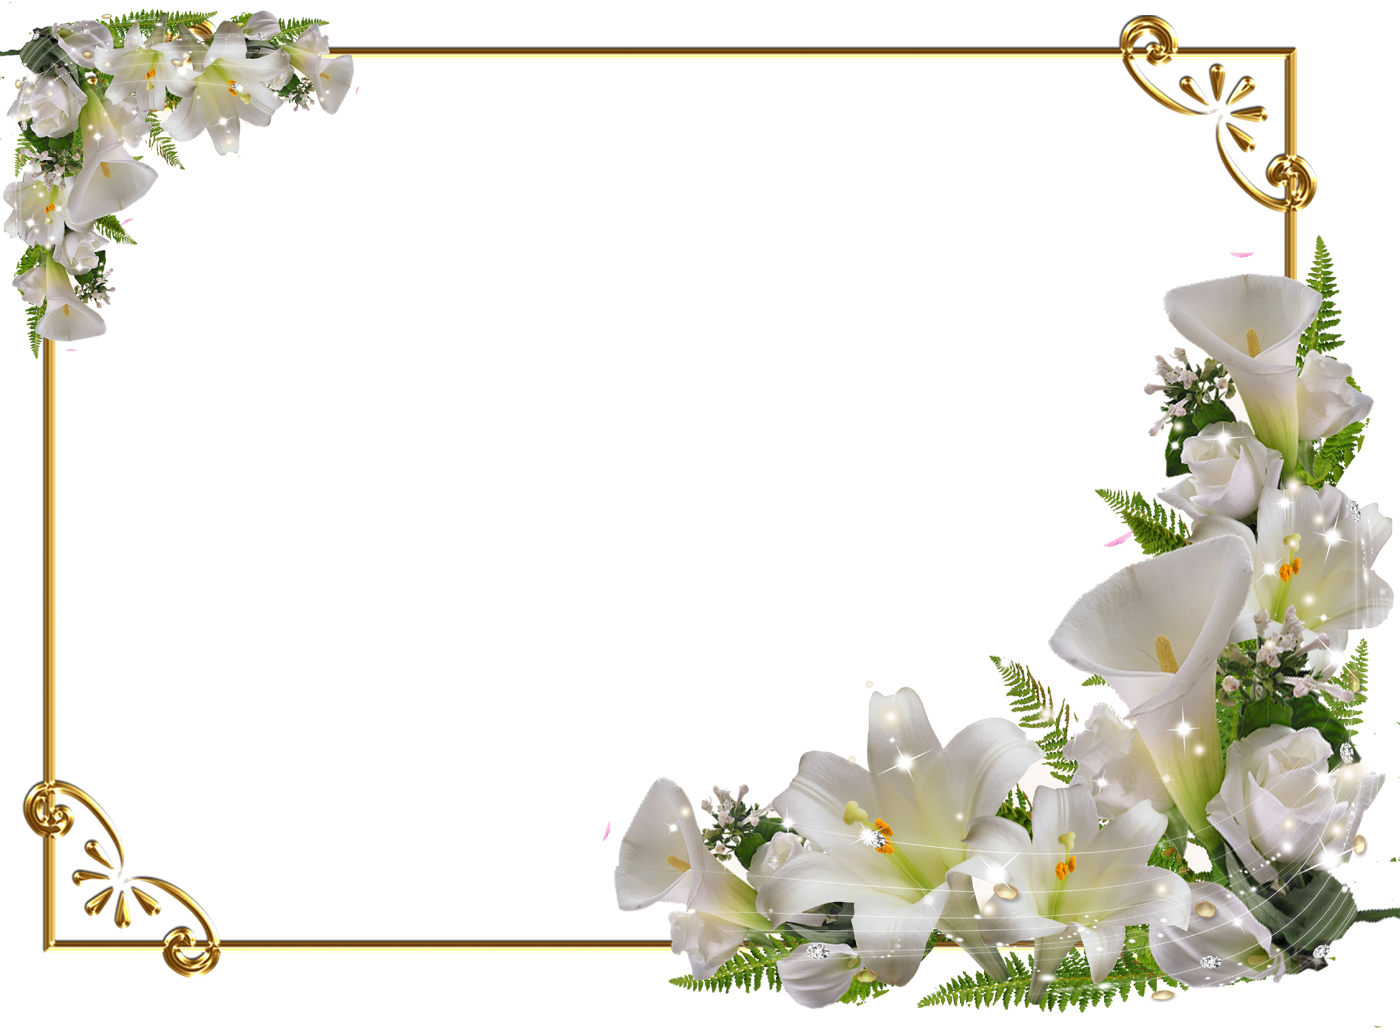 百合 ゆり の花の写真 画像 フリー素材 No 321 白ゆり コーナー